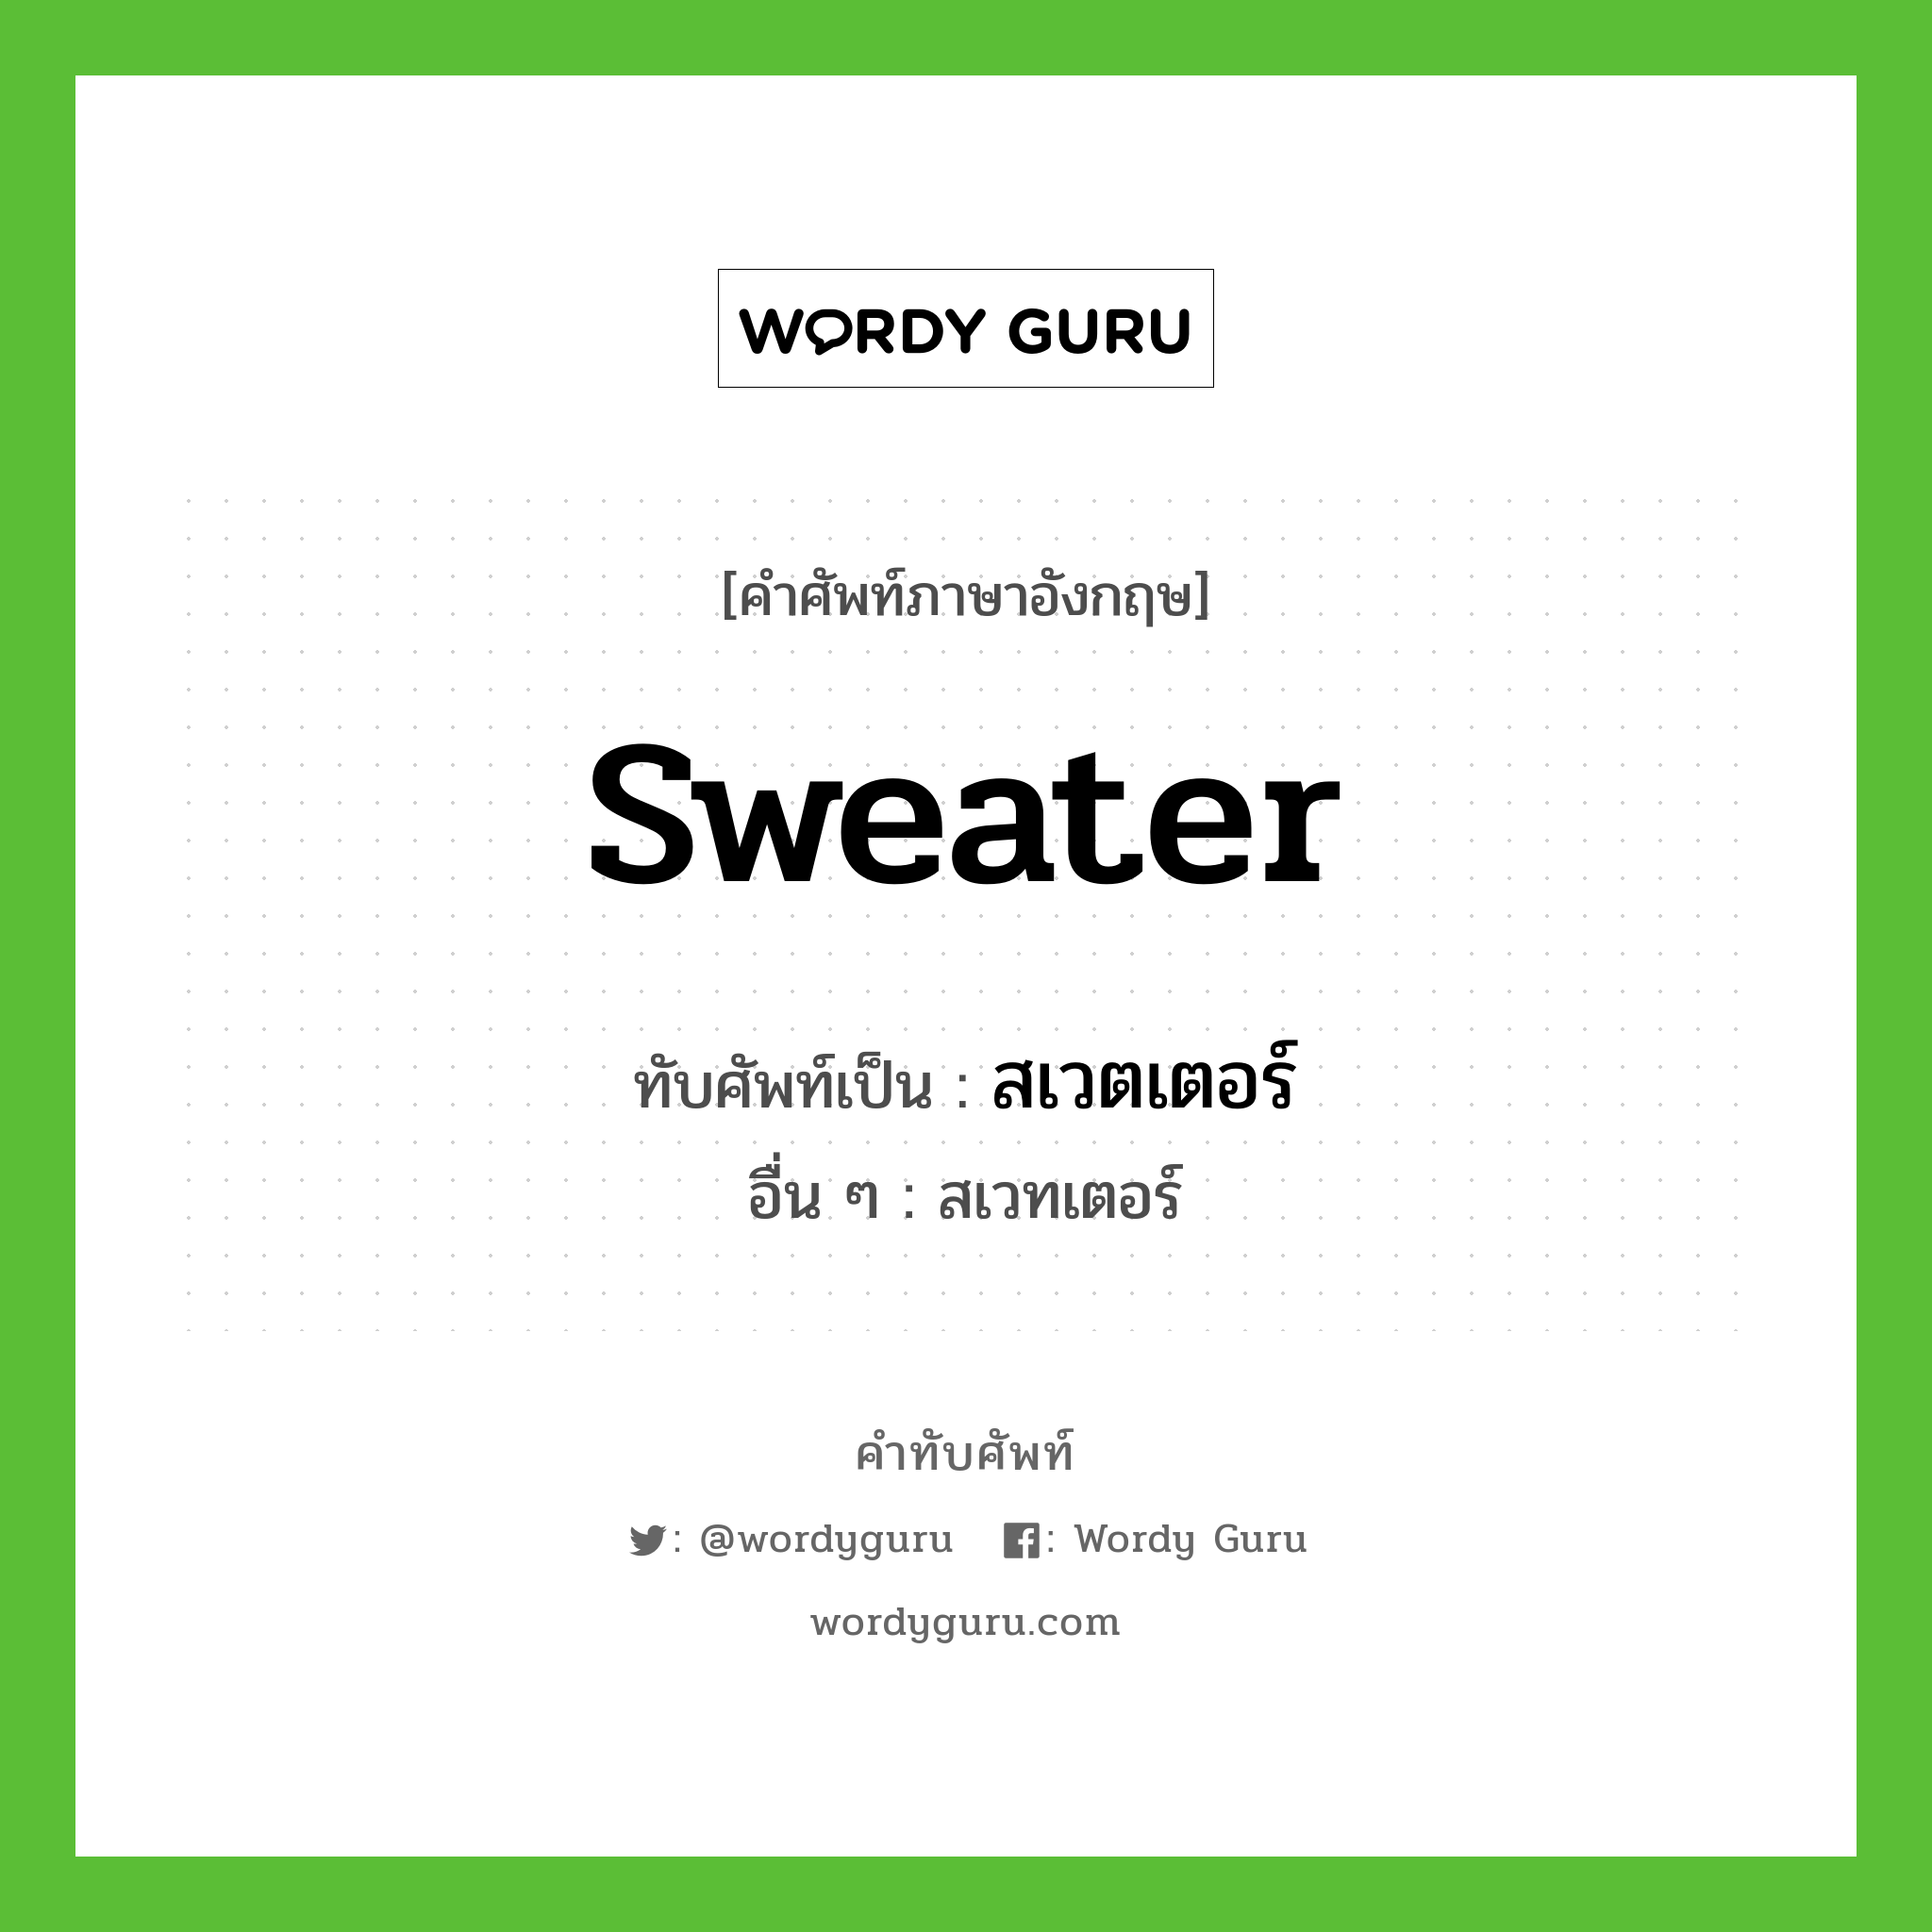 sweater เขียนเป็นคำไทยว่าอะไร?, คำศัพท์ภาษาอังกฤษ sweater ทับศัพท์เป็น สเวตเตอร์ อื่น ๆ สเวทเตอร์